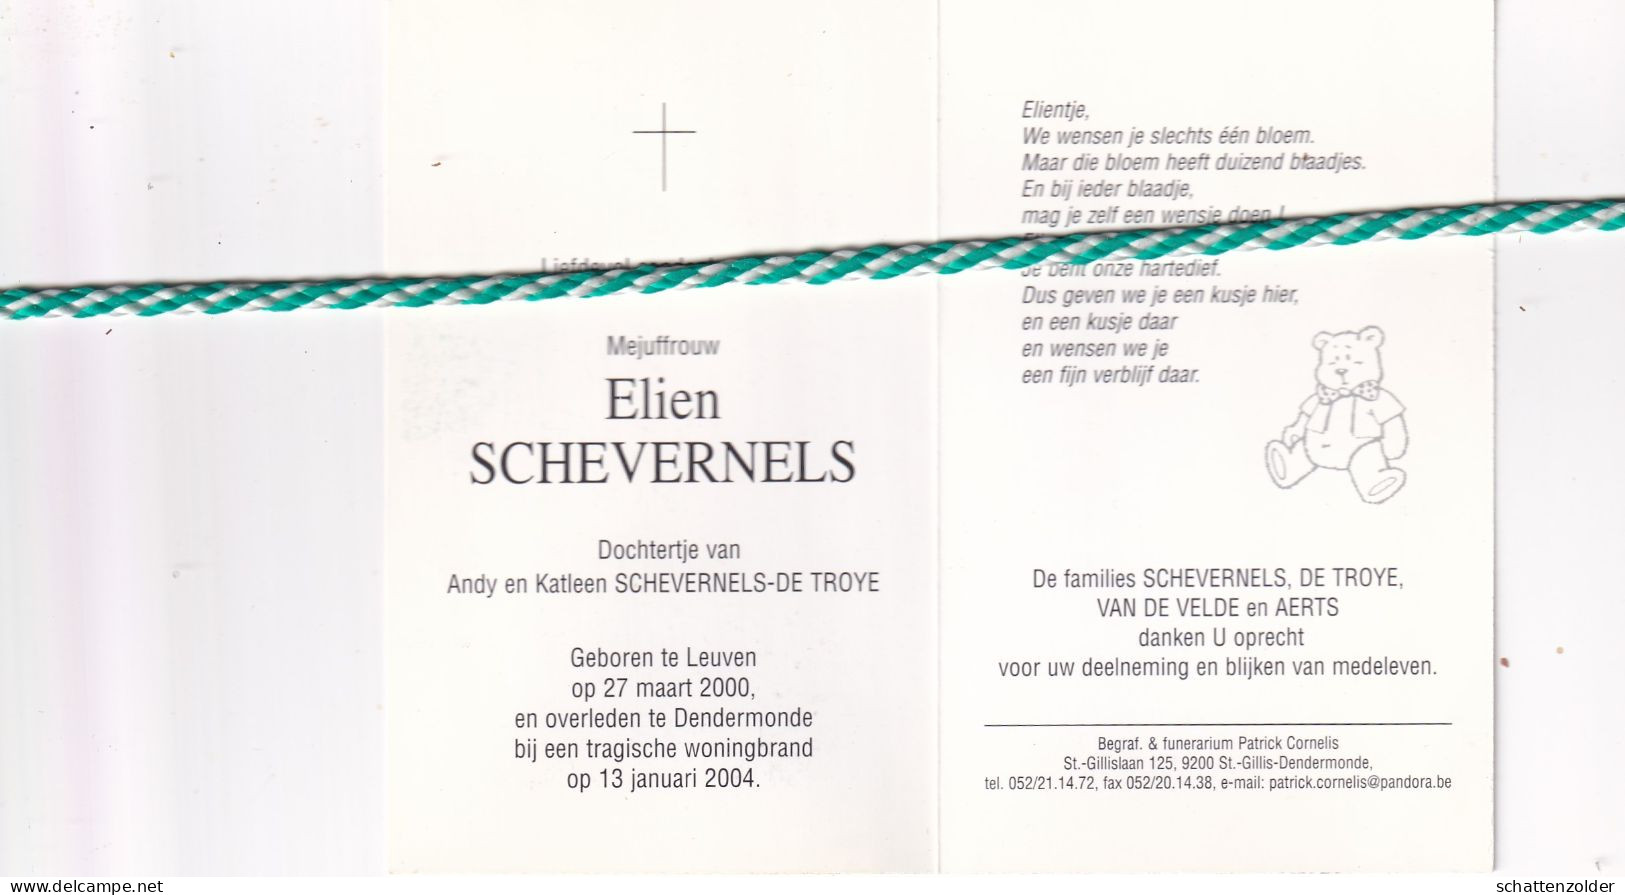 Elien Schevernels-De Troye, Leuven 2000; Dendermonde (Woningbrand) 2004. Foto